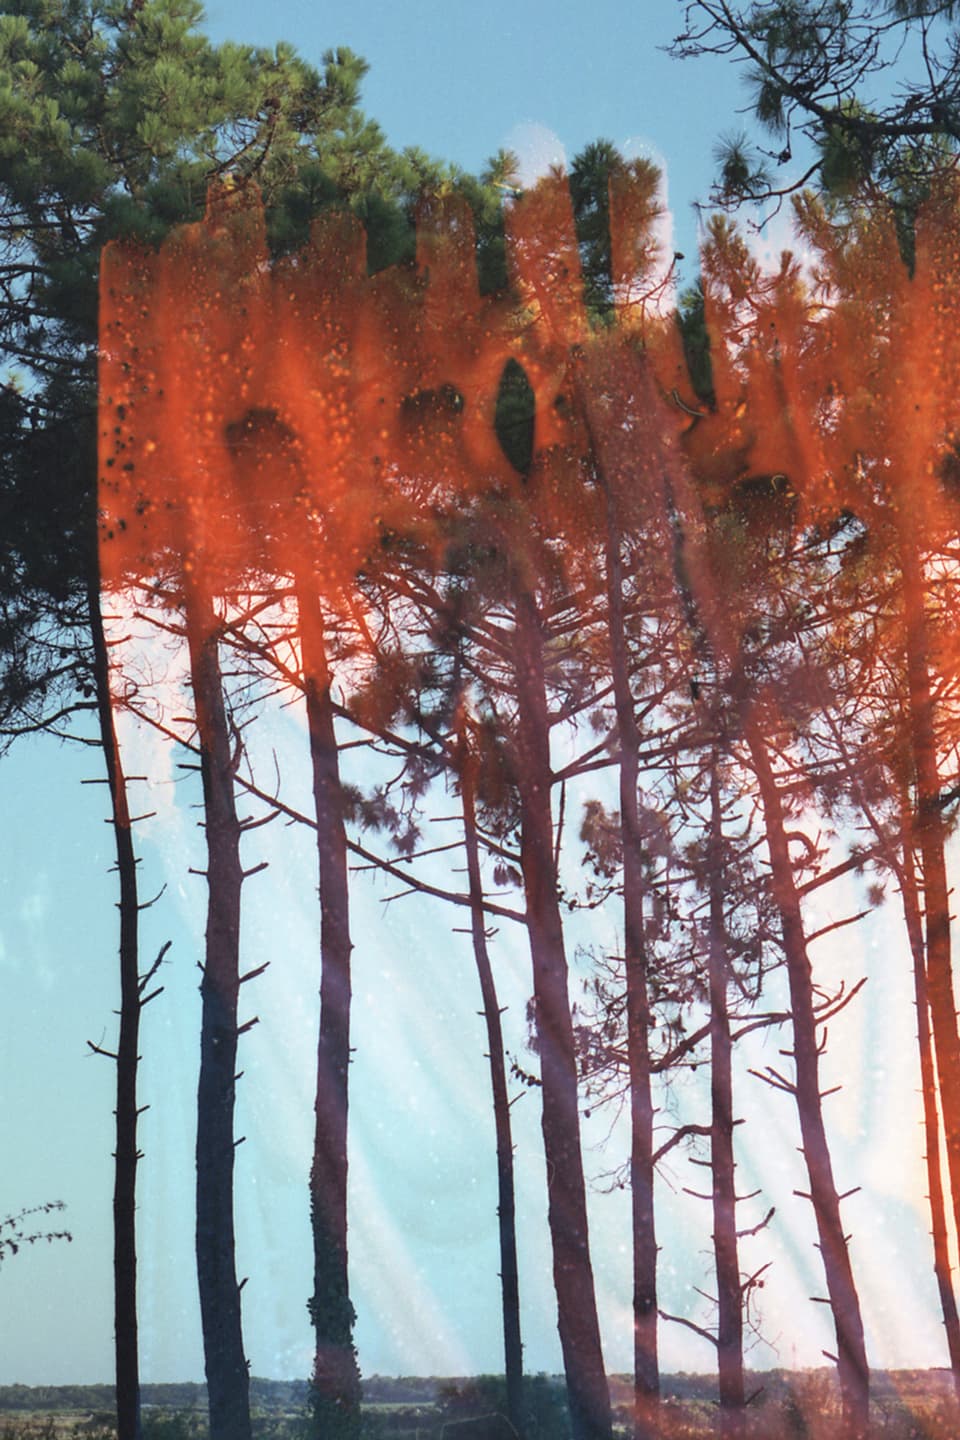 Karge Bäume in einer sonnigen Landschaft.Ein zweites Foto ist darübergelegt mit einer orangen, nicht erkennbaren Struktur.